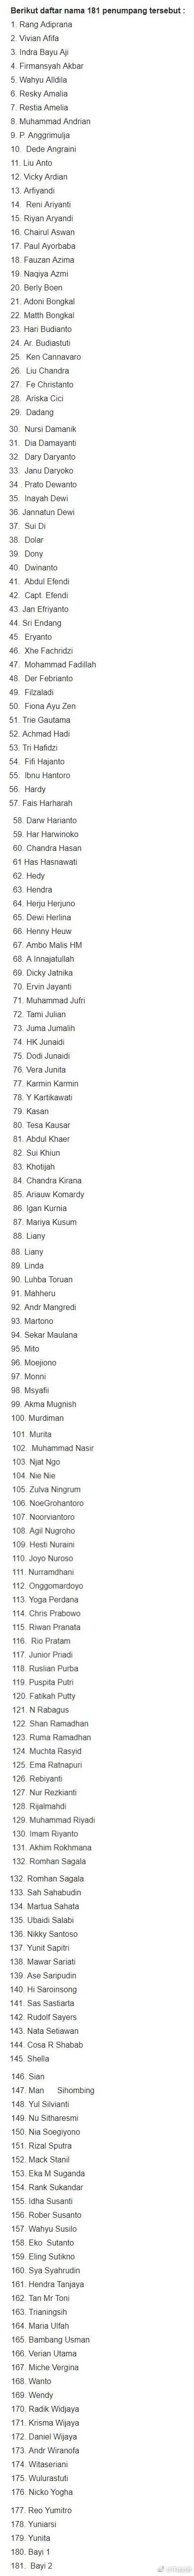 印尼坠机事件189人无人生还 遇难者名单公布